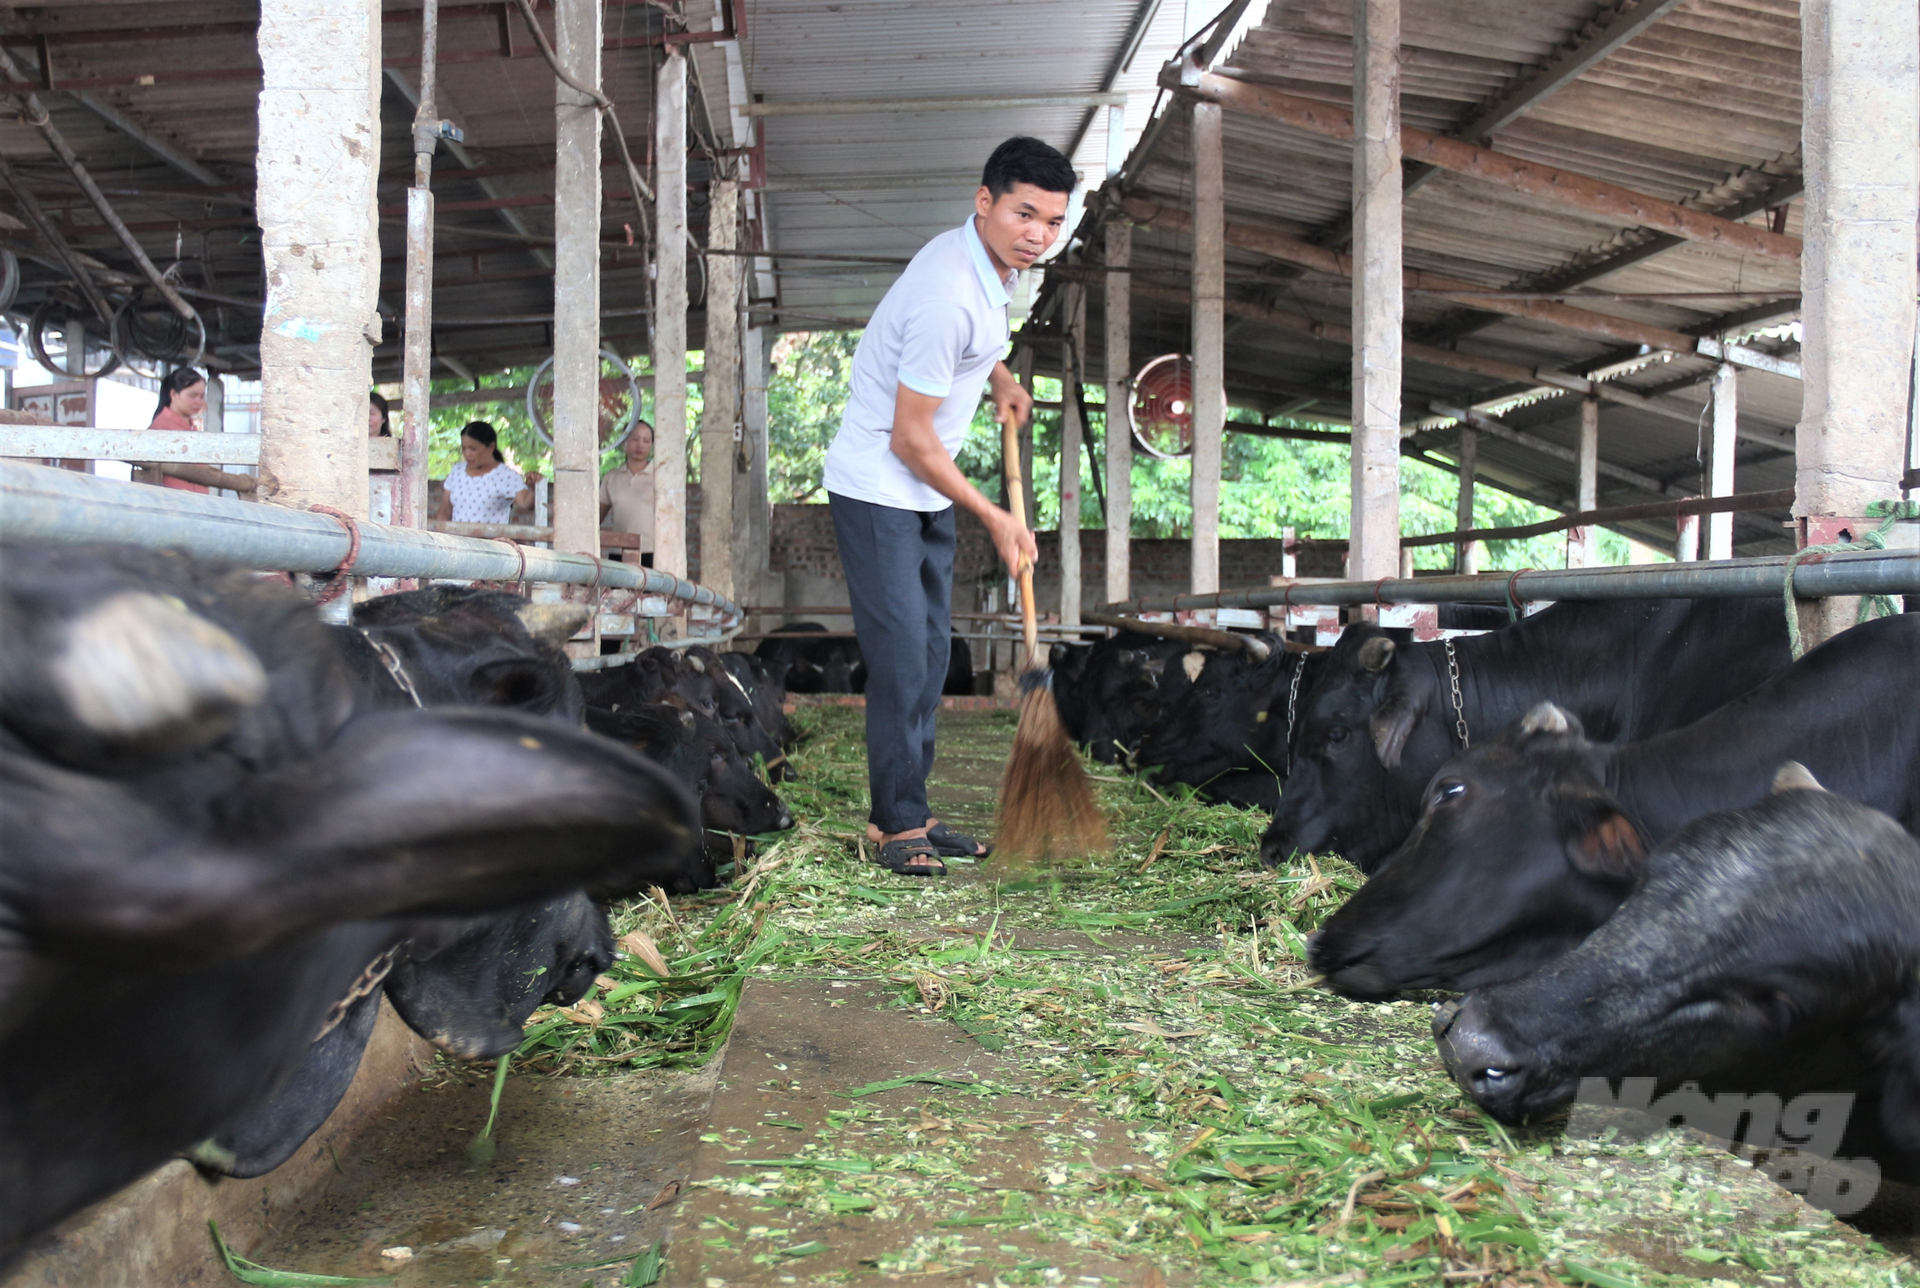 Thời gian qua, ngành chăn nuôi Thái Nguyên được phát triển theo hướng tích cực. Ảnh: Phạm Hiếu.